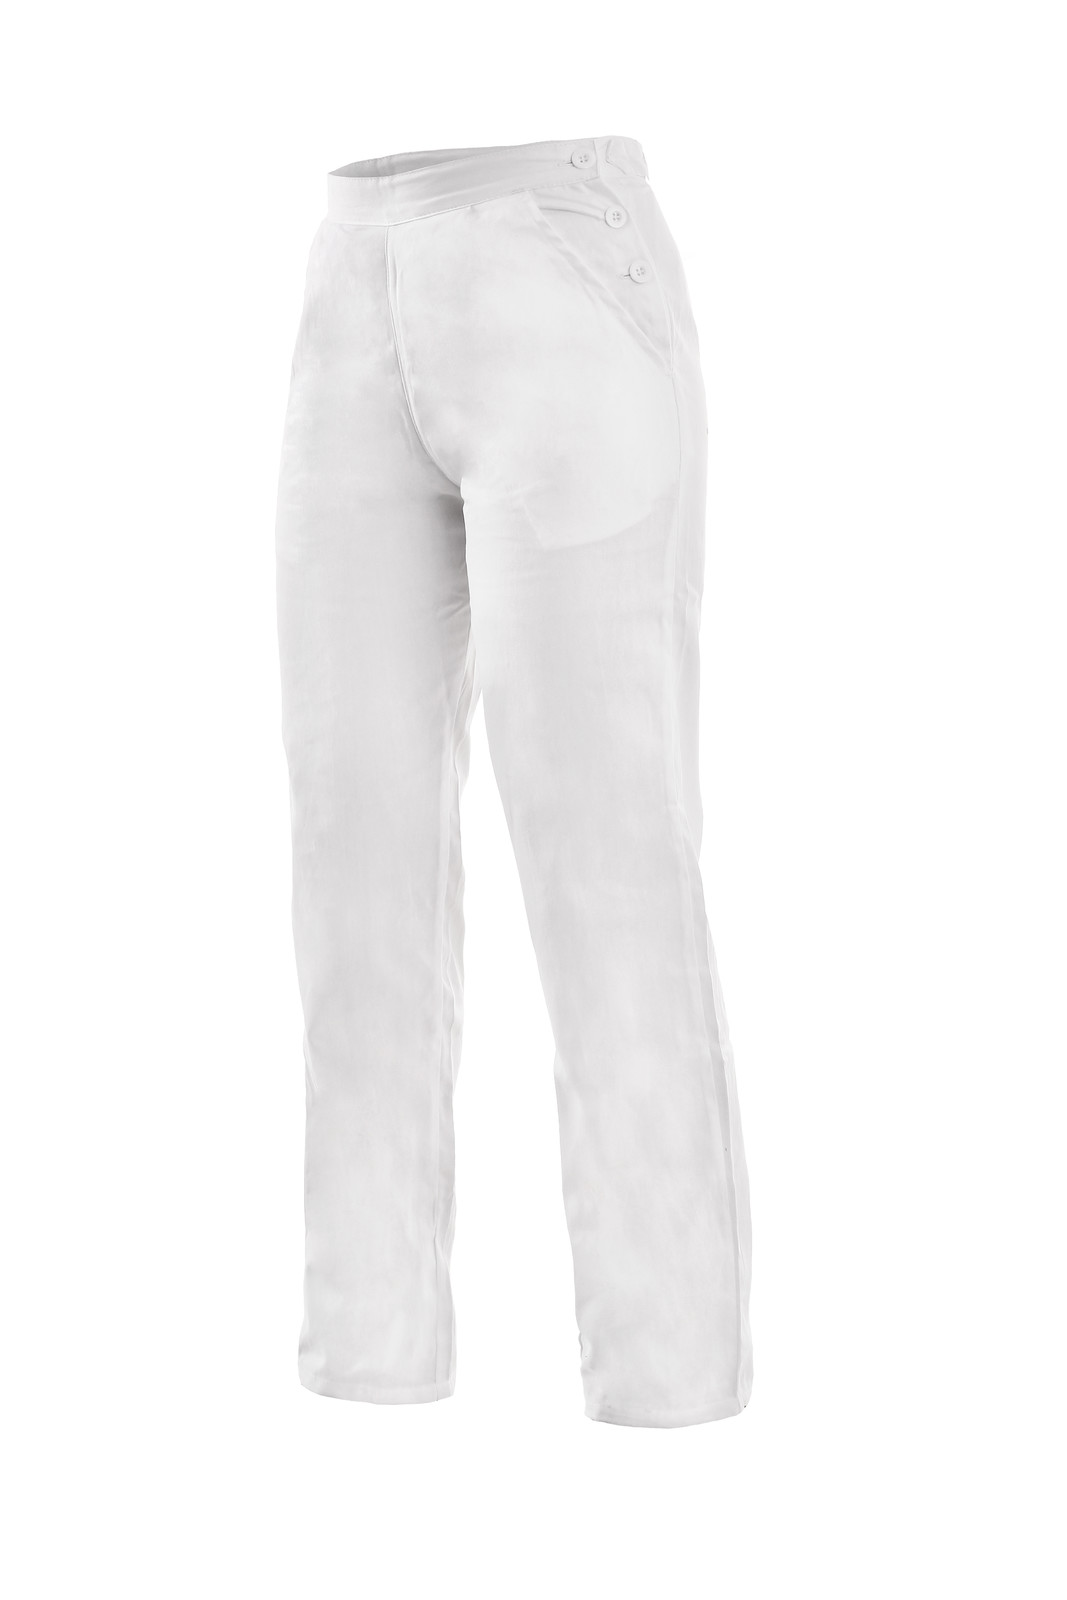 Dámske biele bavlnené nohavice Darja - veľkosť: 40, farba: biela